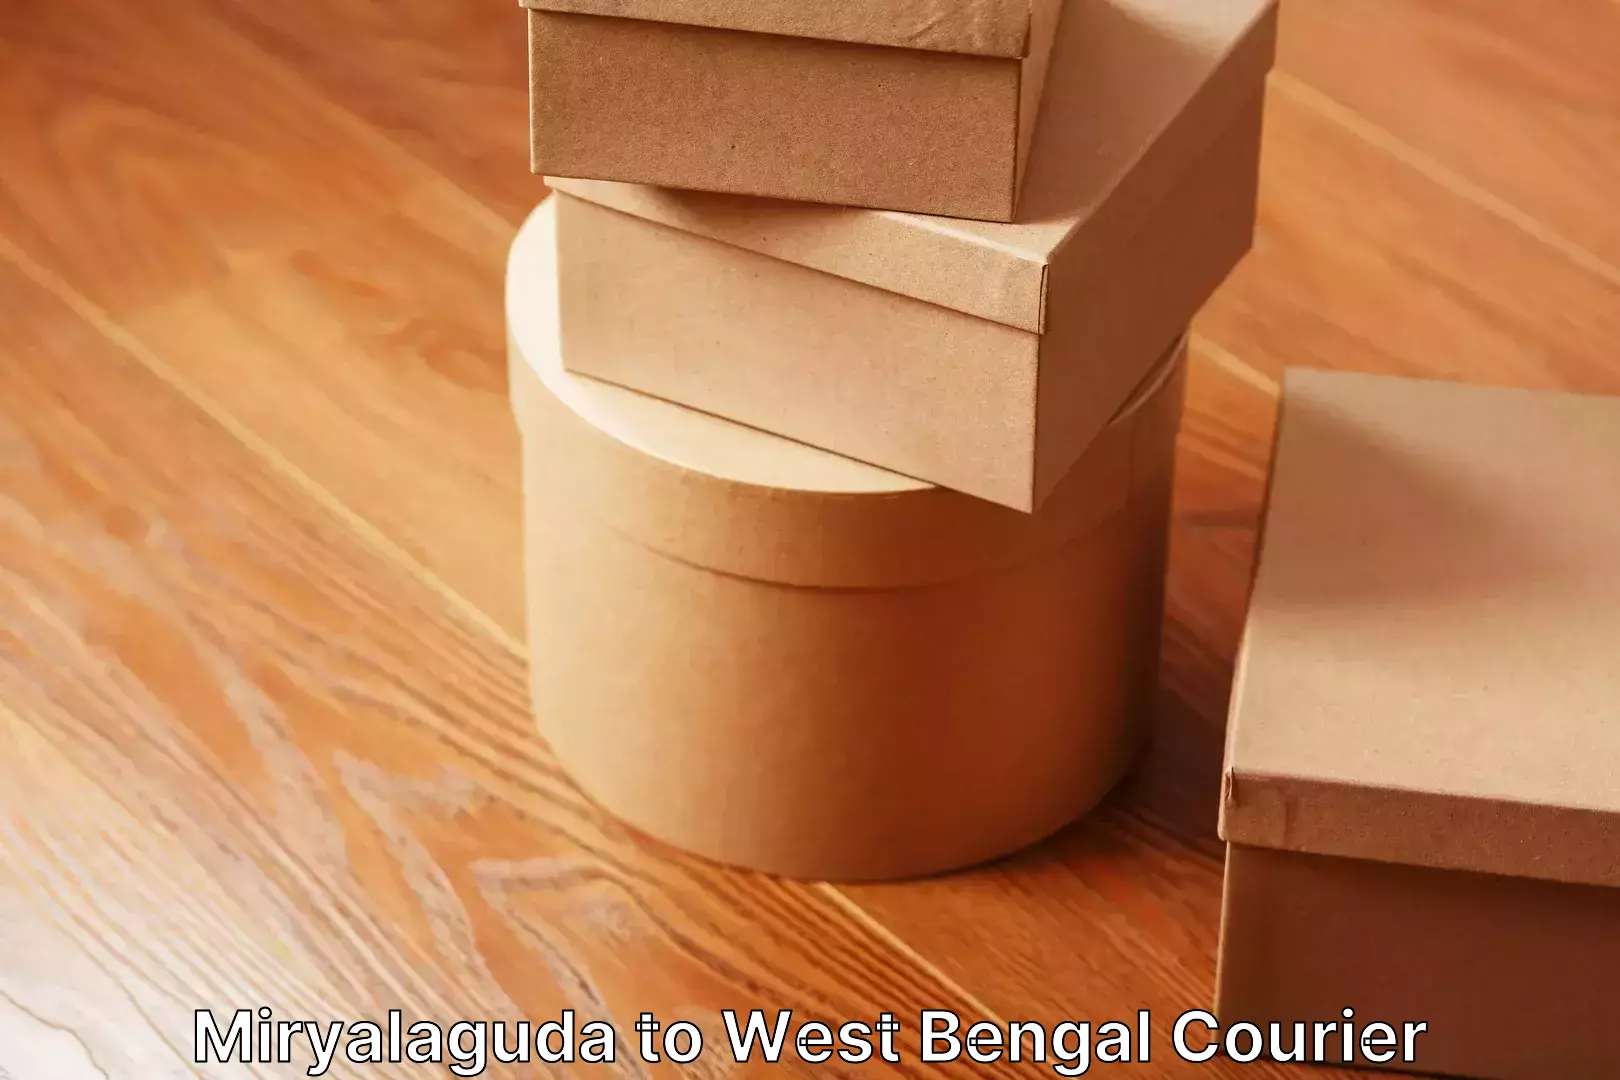 Furniture transport service Miryalaguda to West Bengal